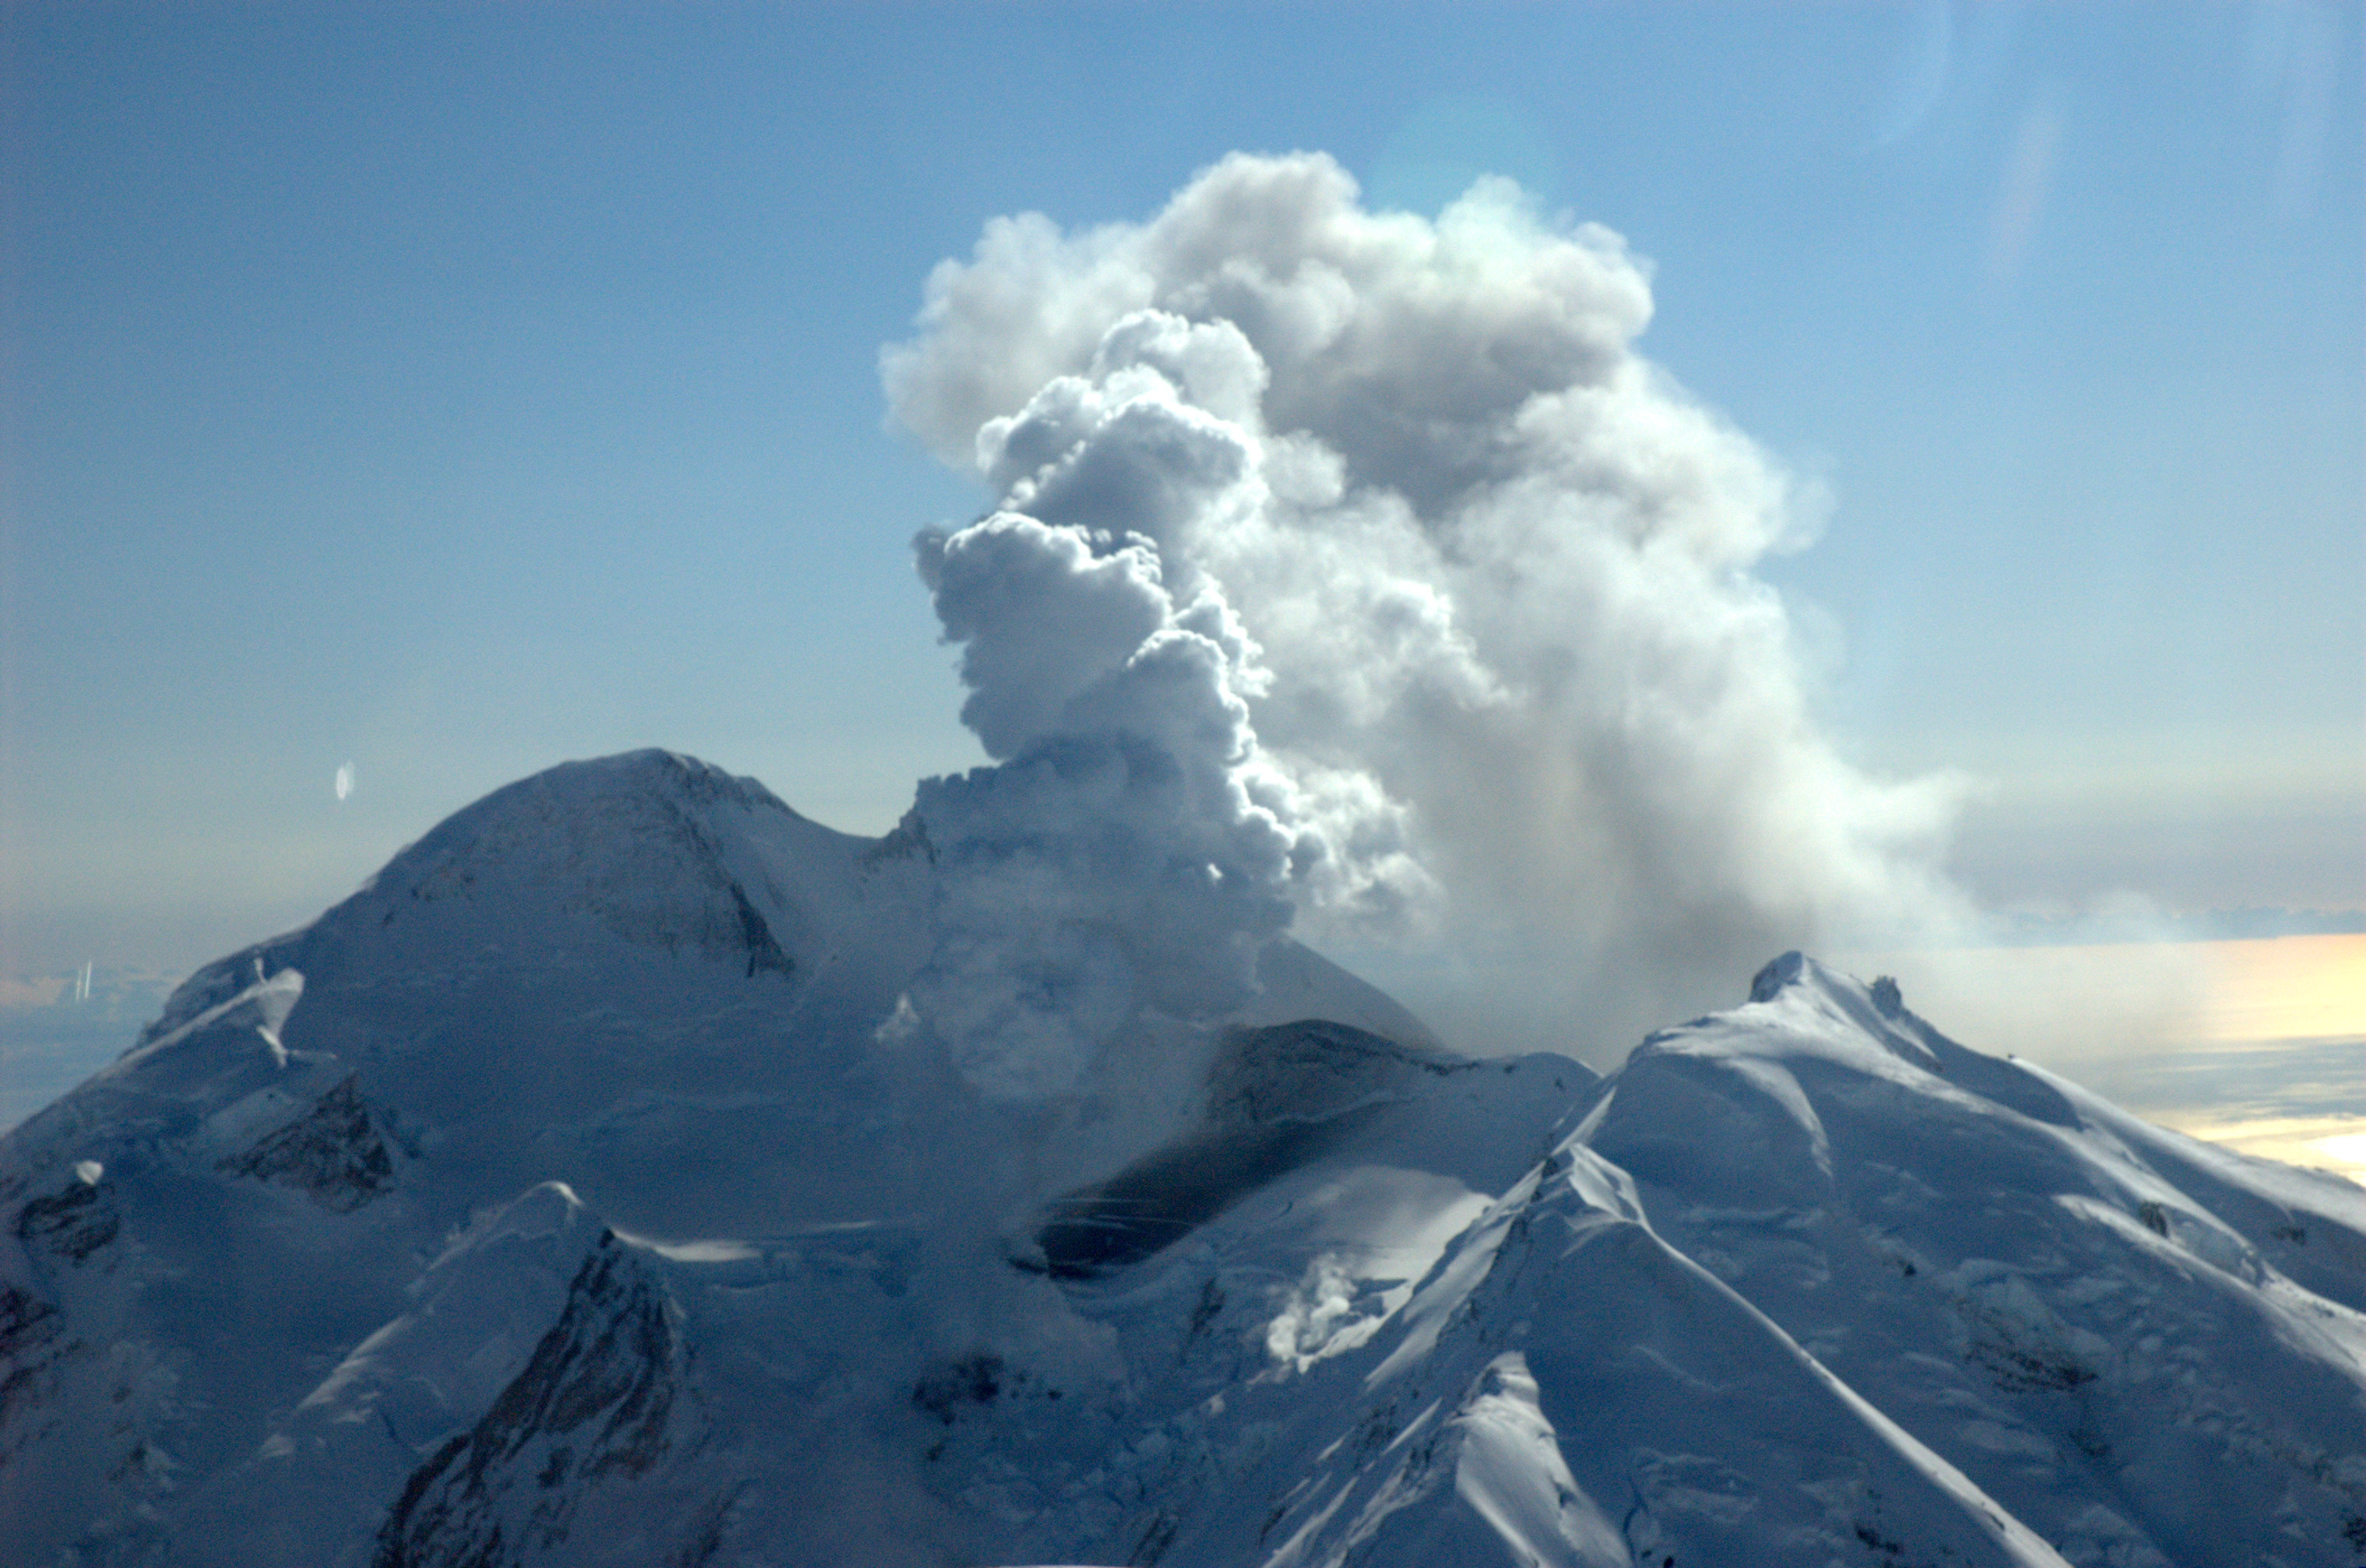 A Redoubt nevű alaszkai rétegvulkán vízgőz, szén- és kén-dioxid keverékét juttatja a levegőbe (vagy ahogy felfedezője, James Cook kapitány 1778-ban írta: „fehér füstöt ereget, tűz nélkül”)